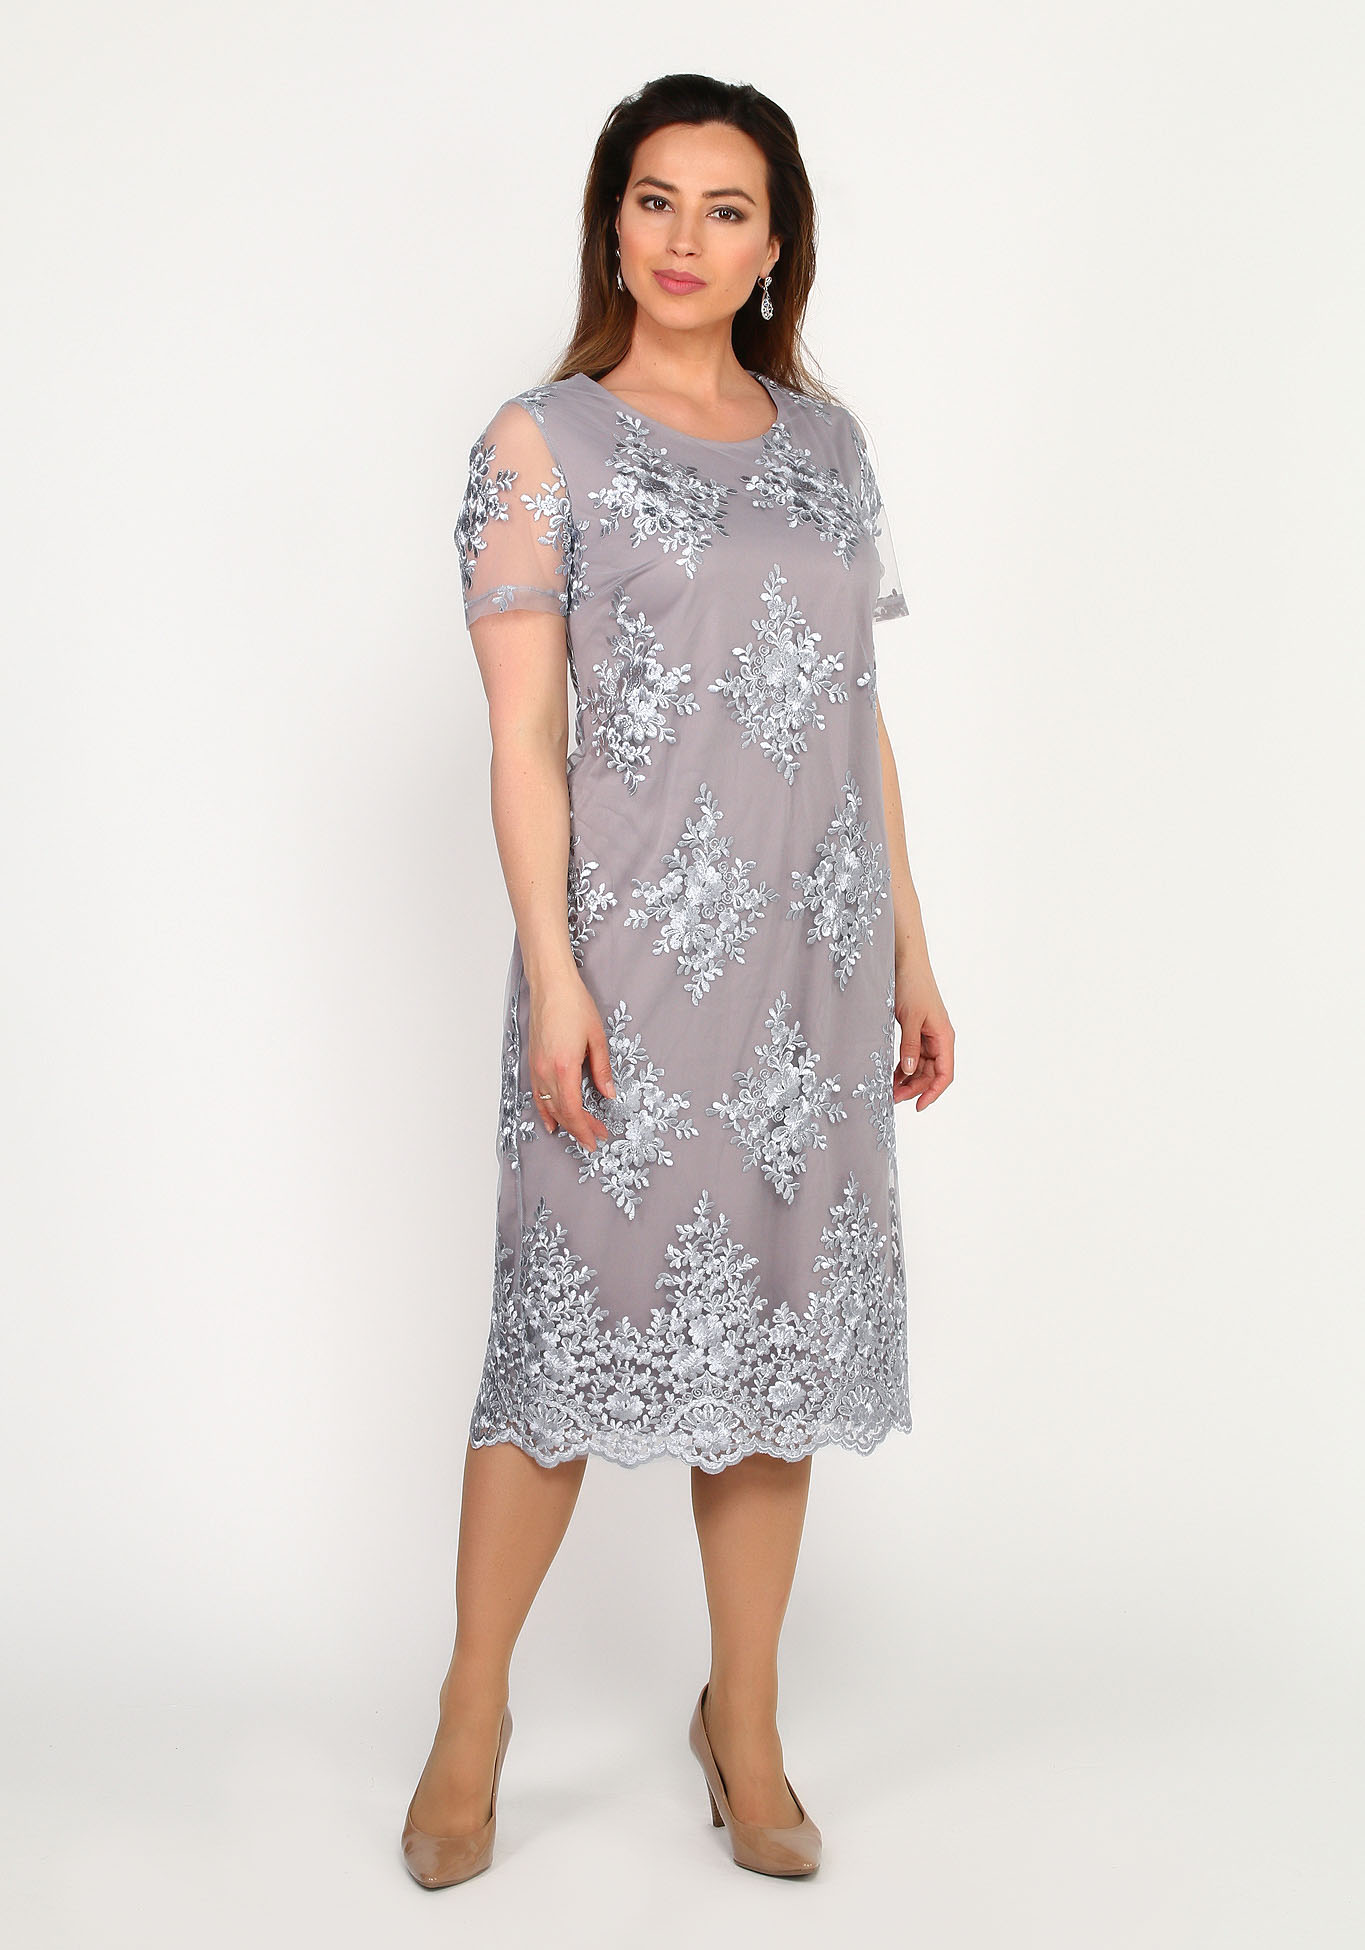 Костюм кружевной: платье и жакет Bel Fiore, размер 54, цвет фиолетовый - фото 1